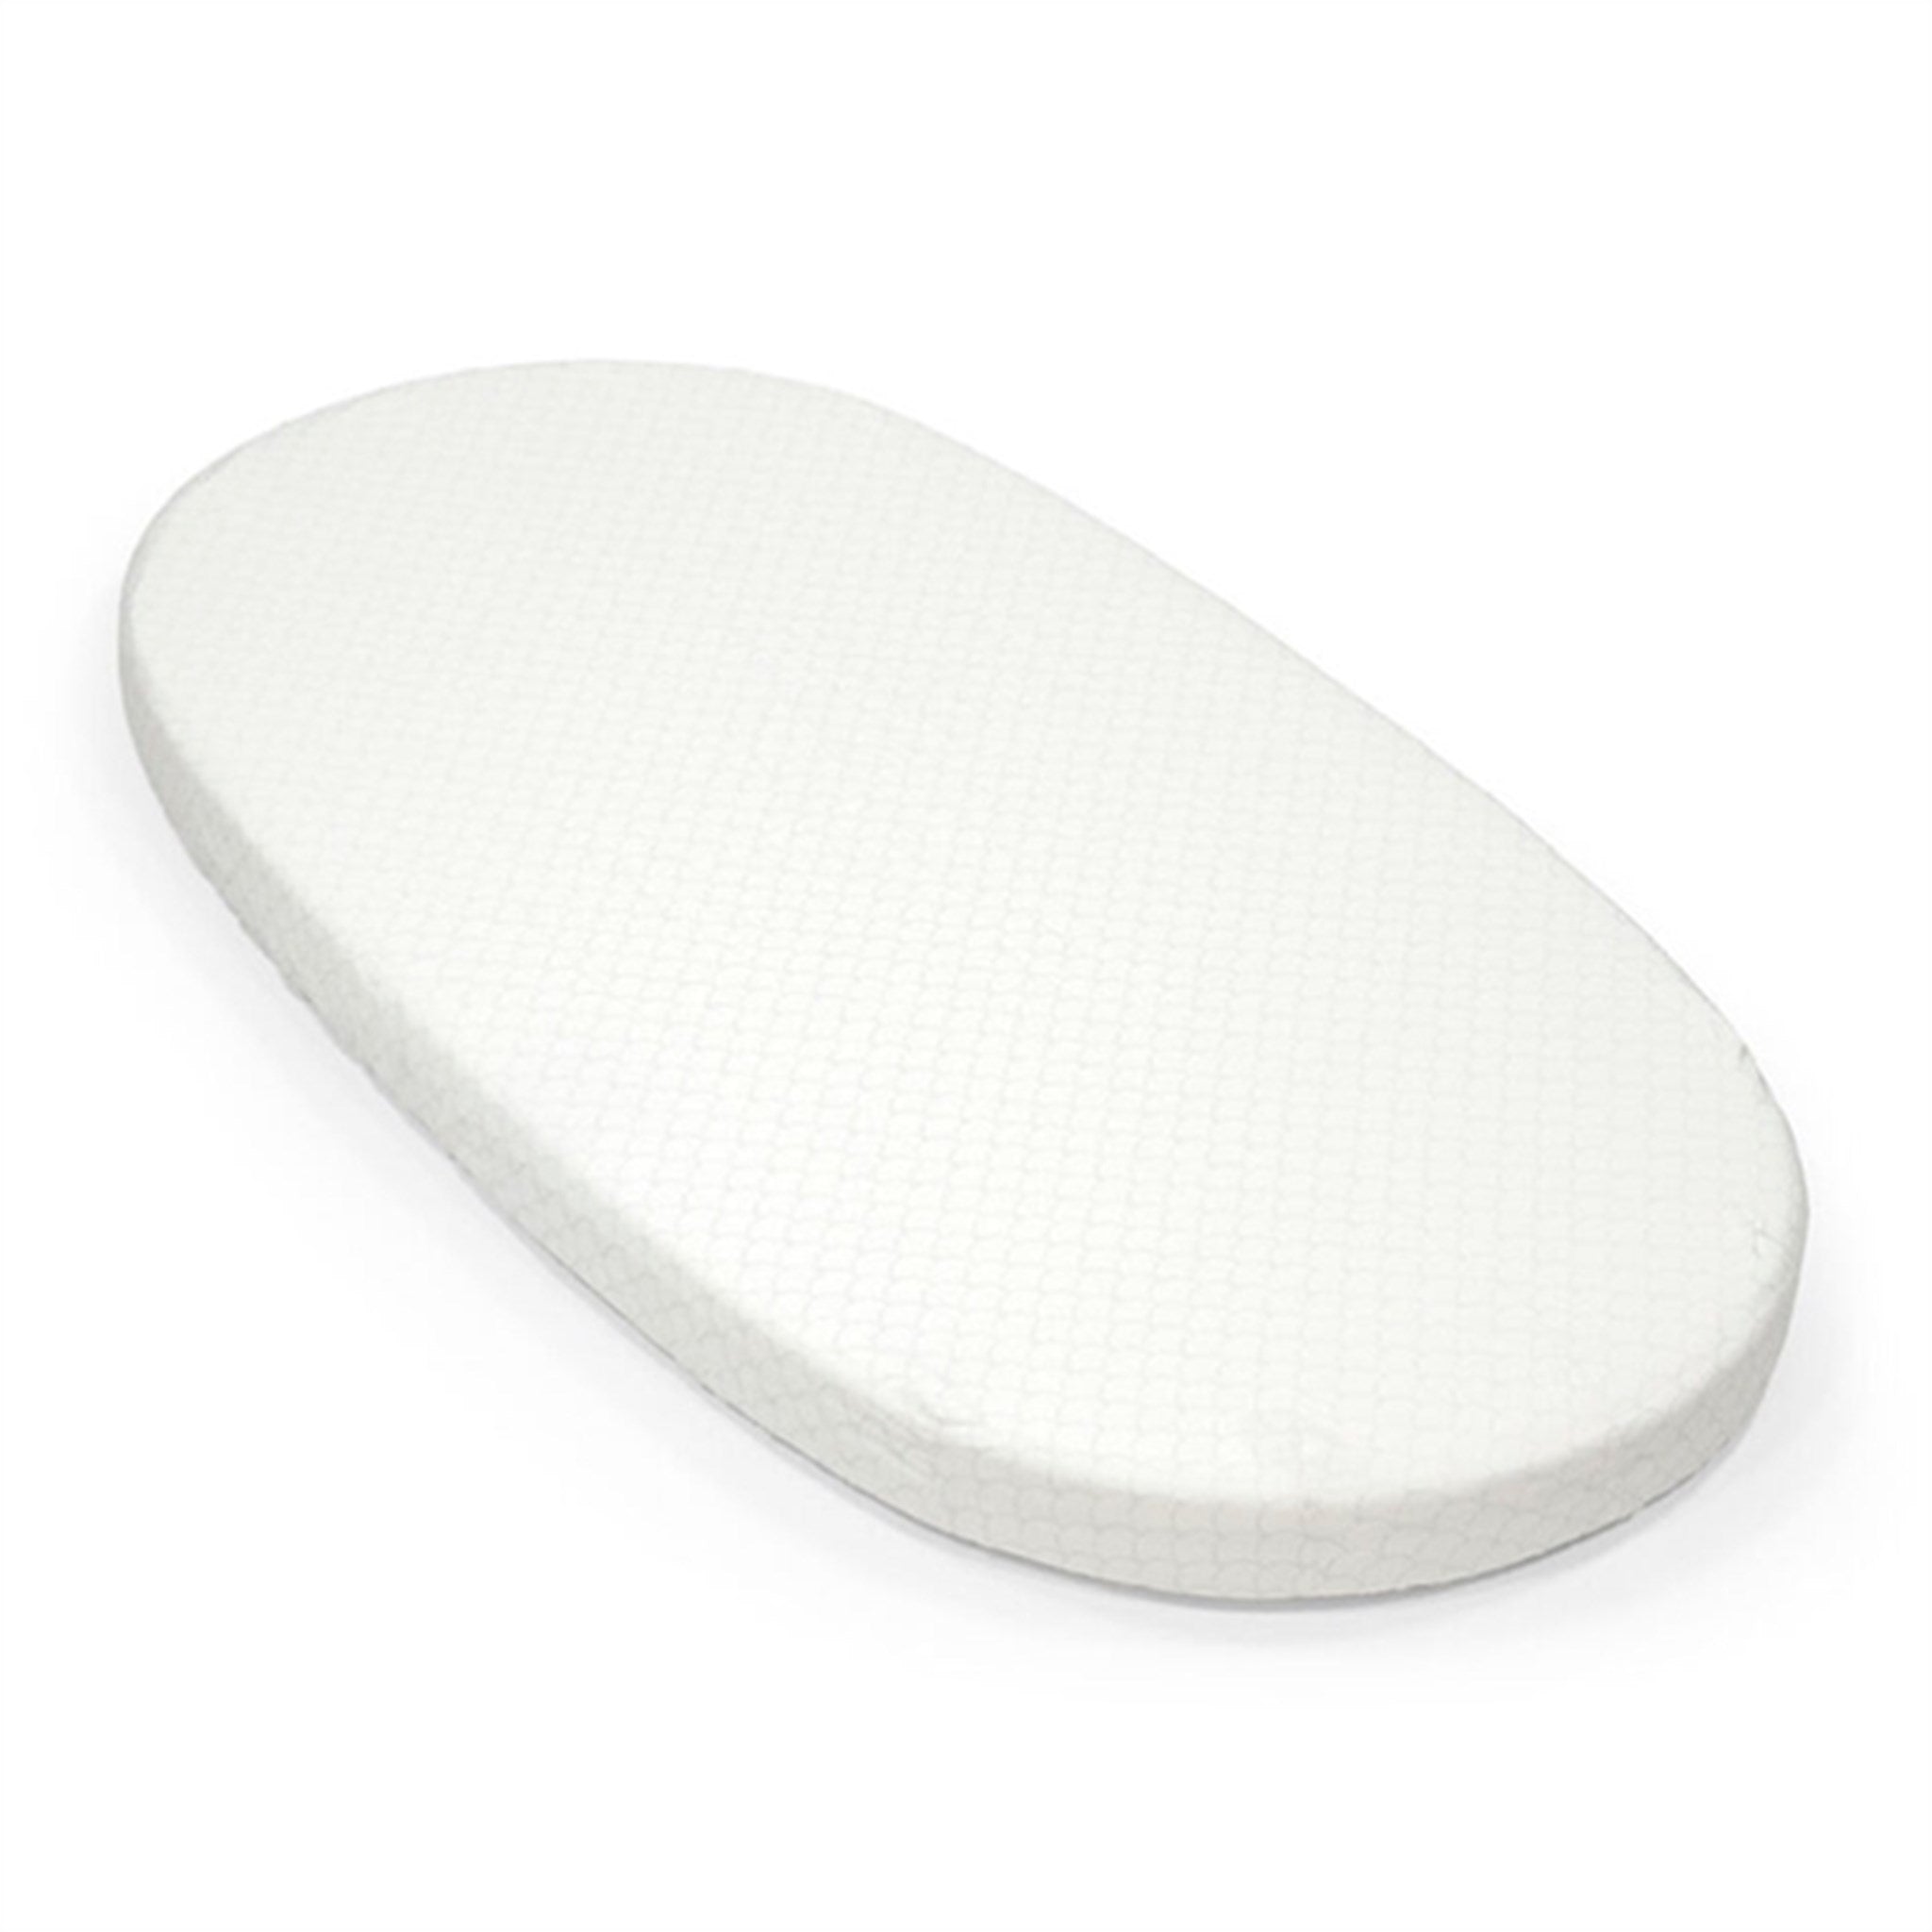 Stokke® Sleepi™ Bed Fitted Sheet White V3